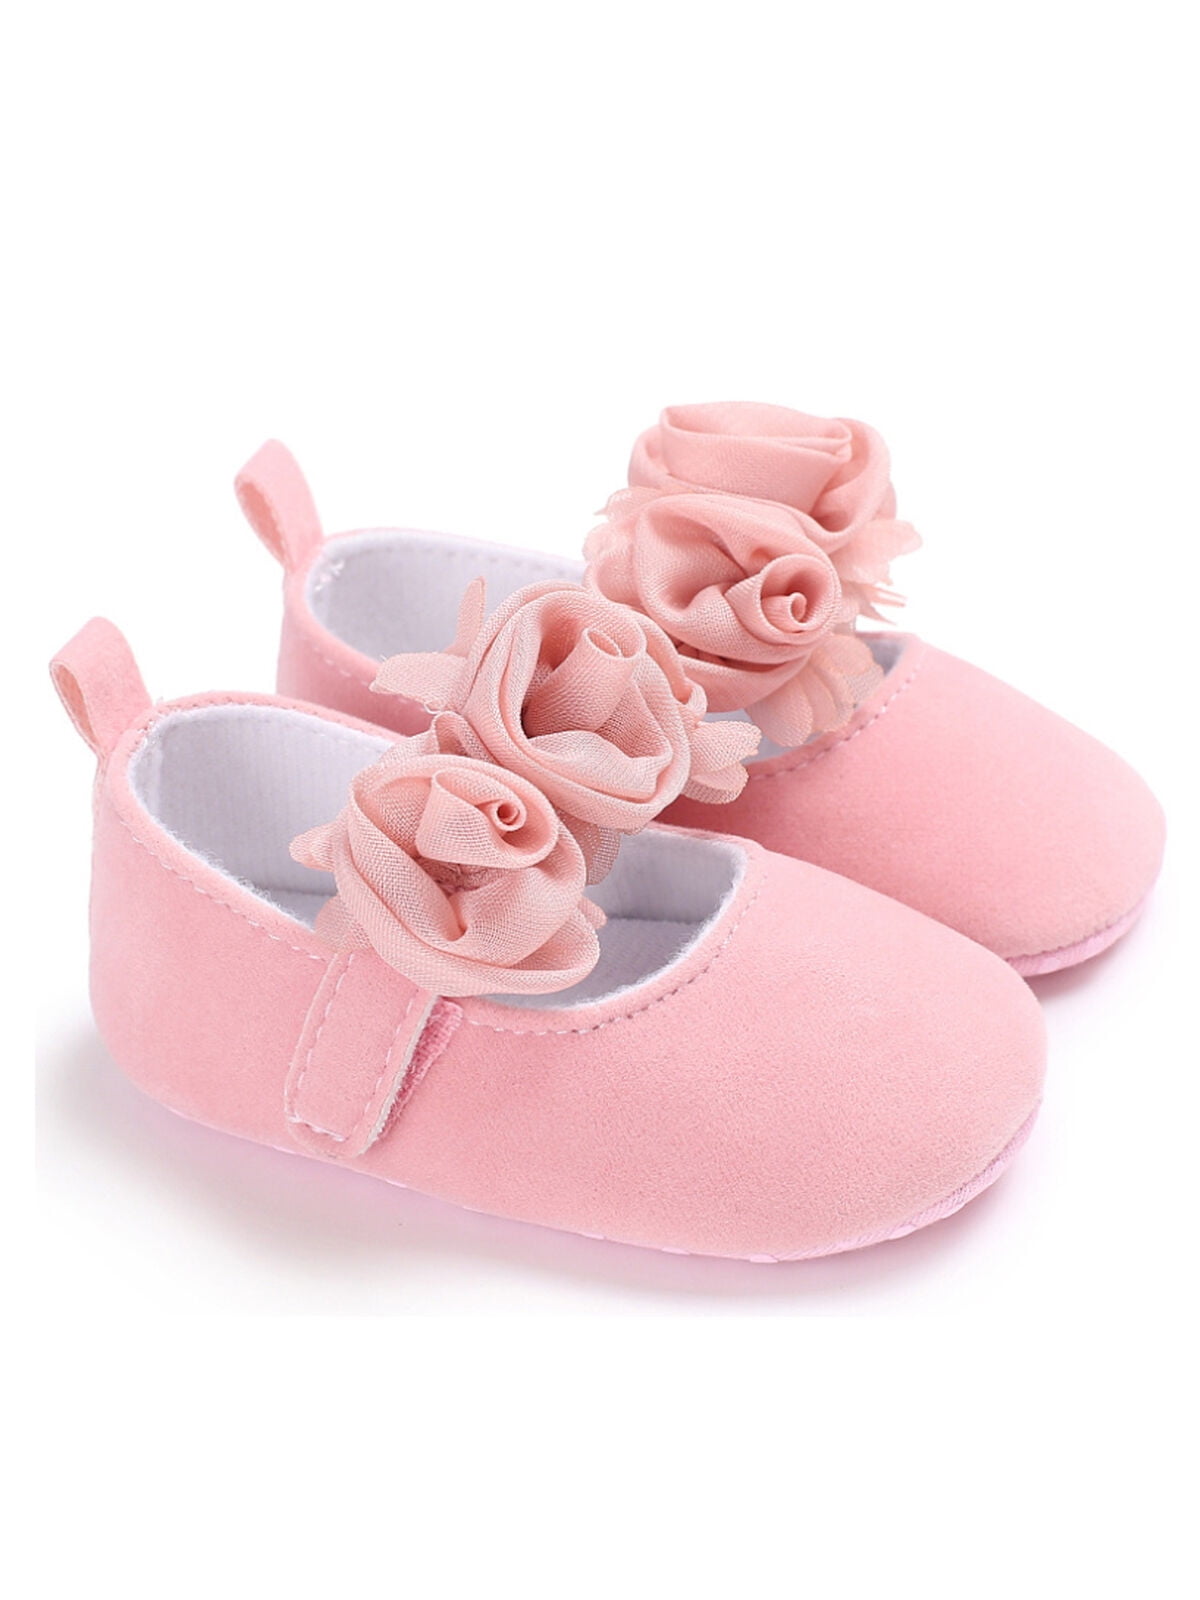 newborn girl dress shoes